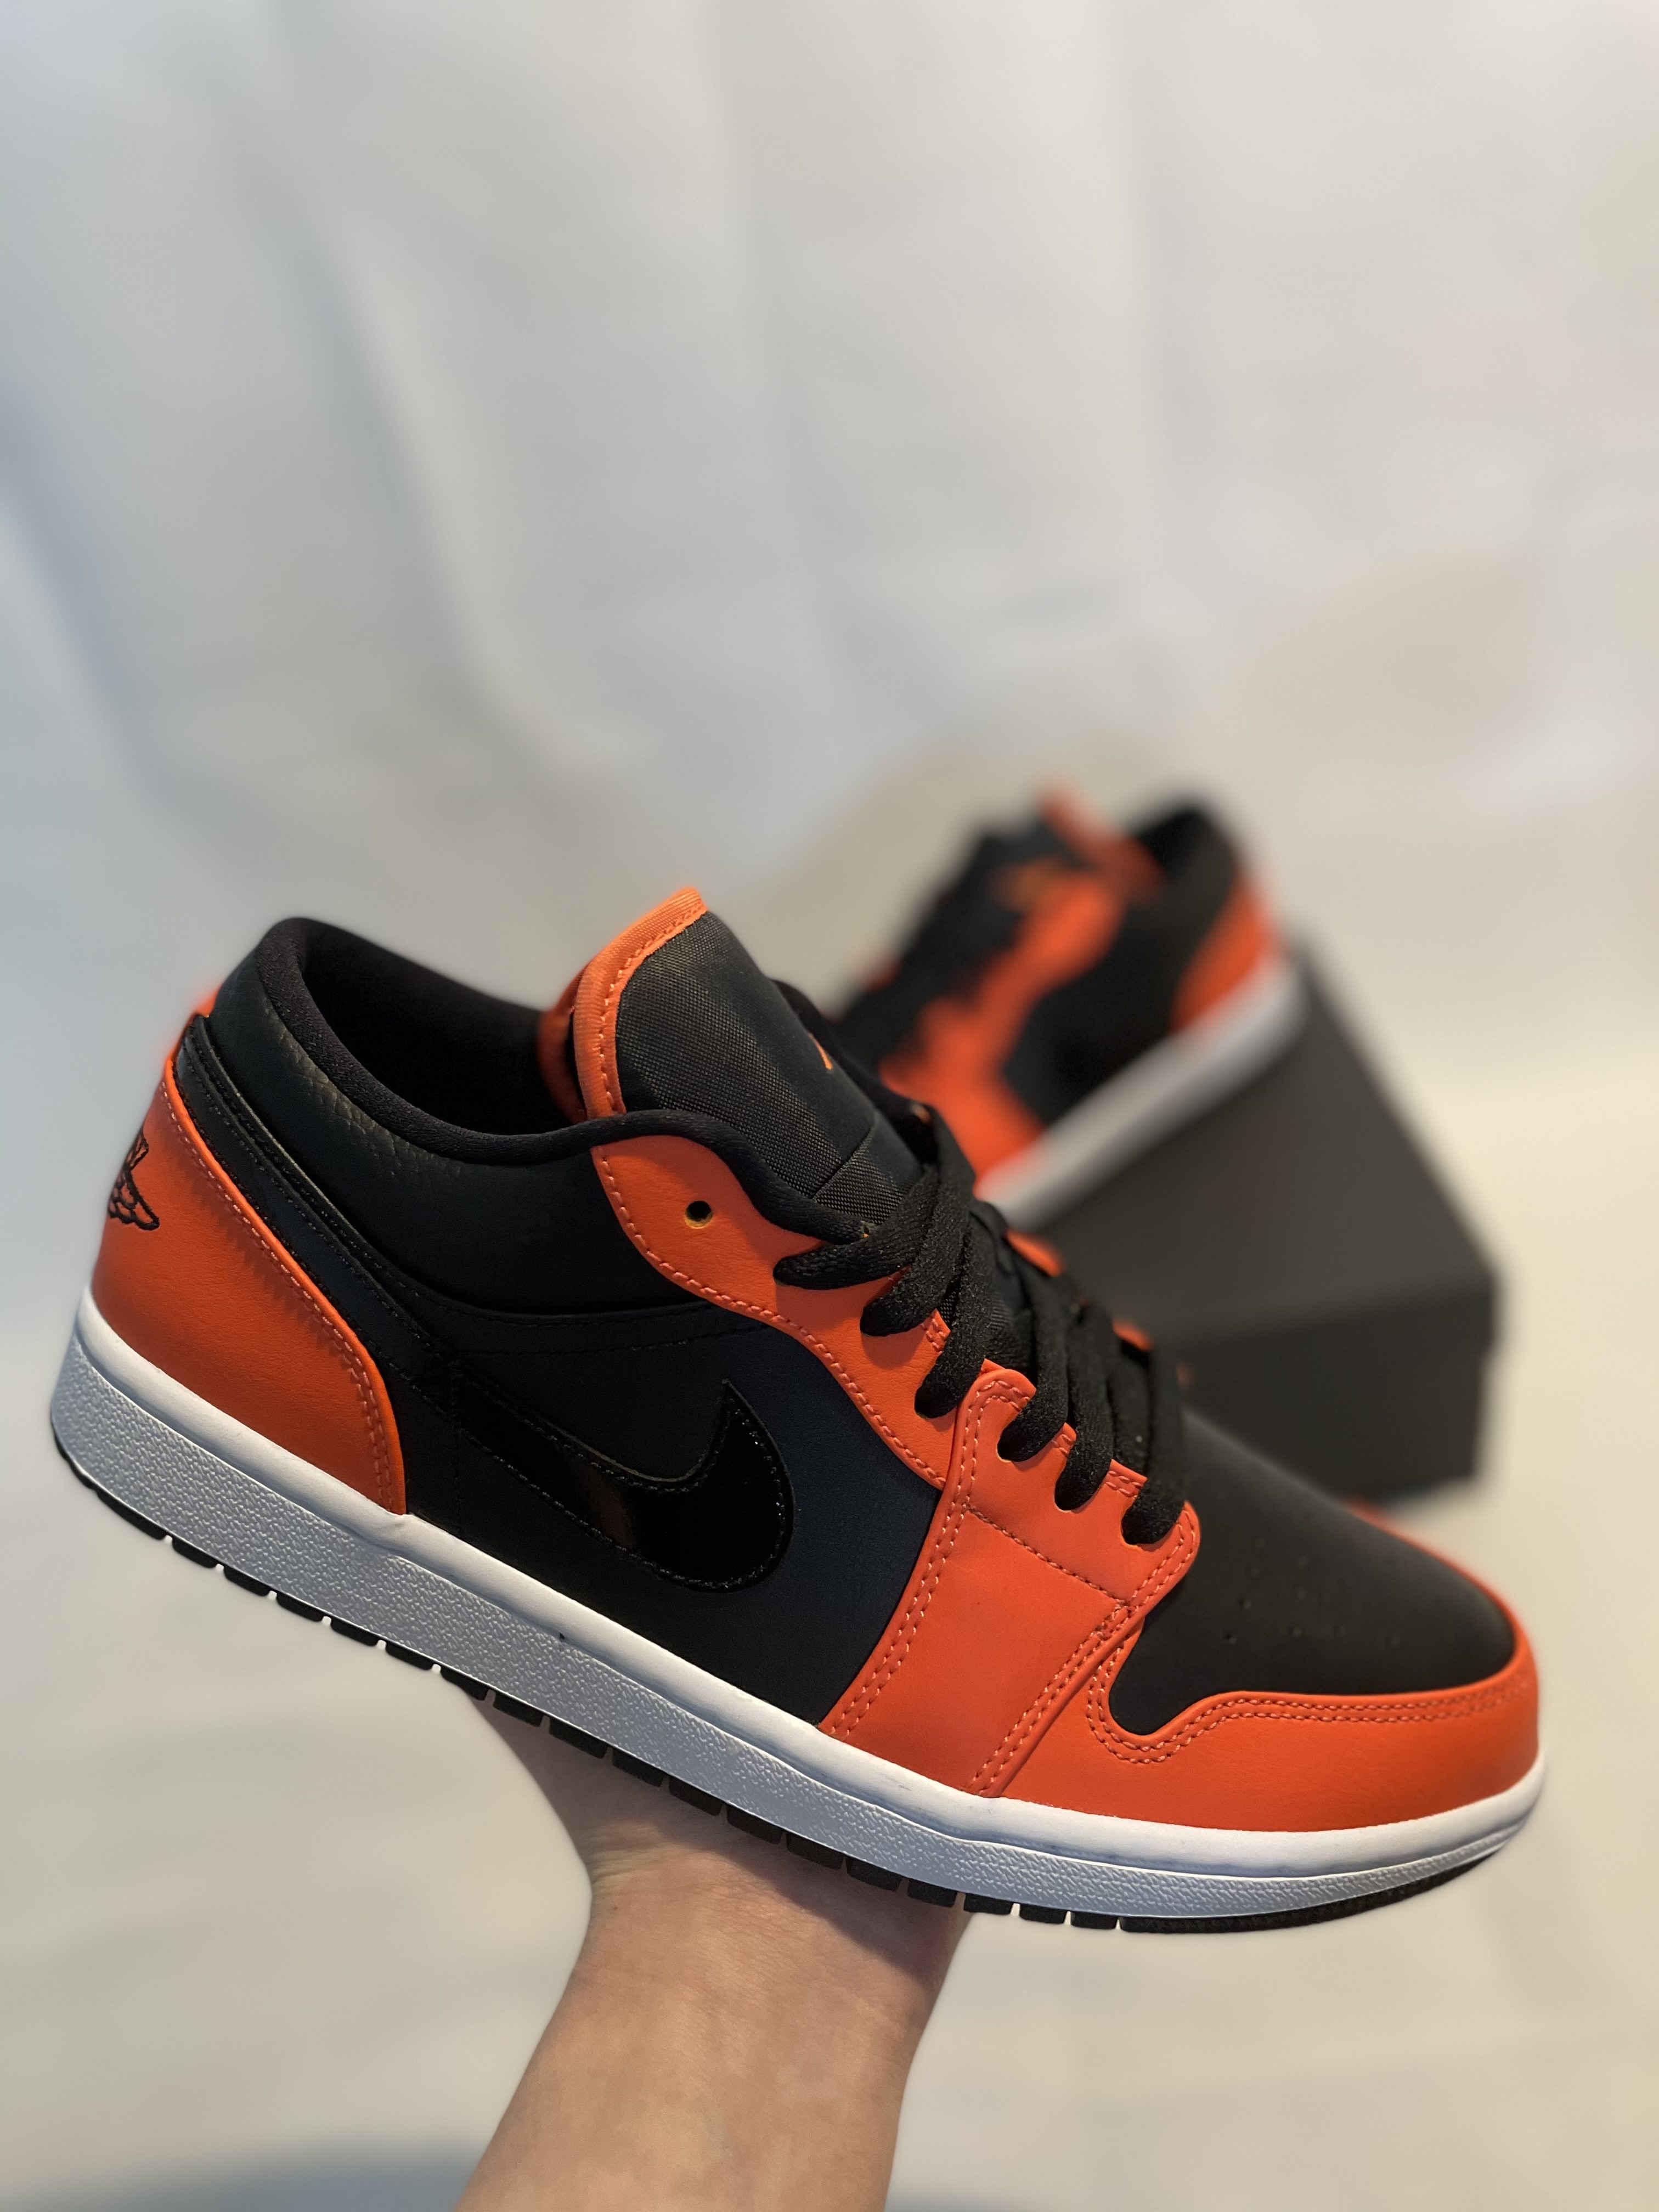 Jordan 1 low se ‘black orange turf’ - 2